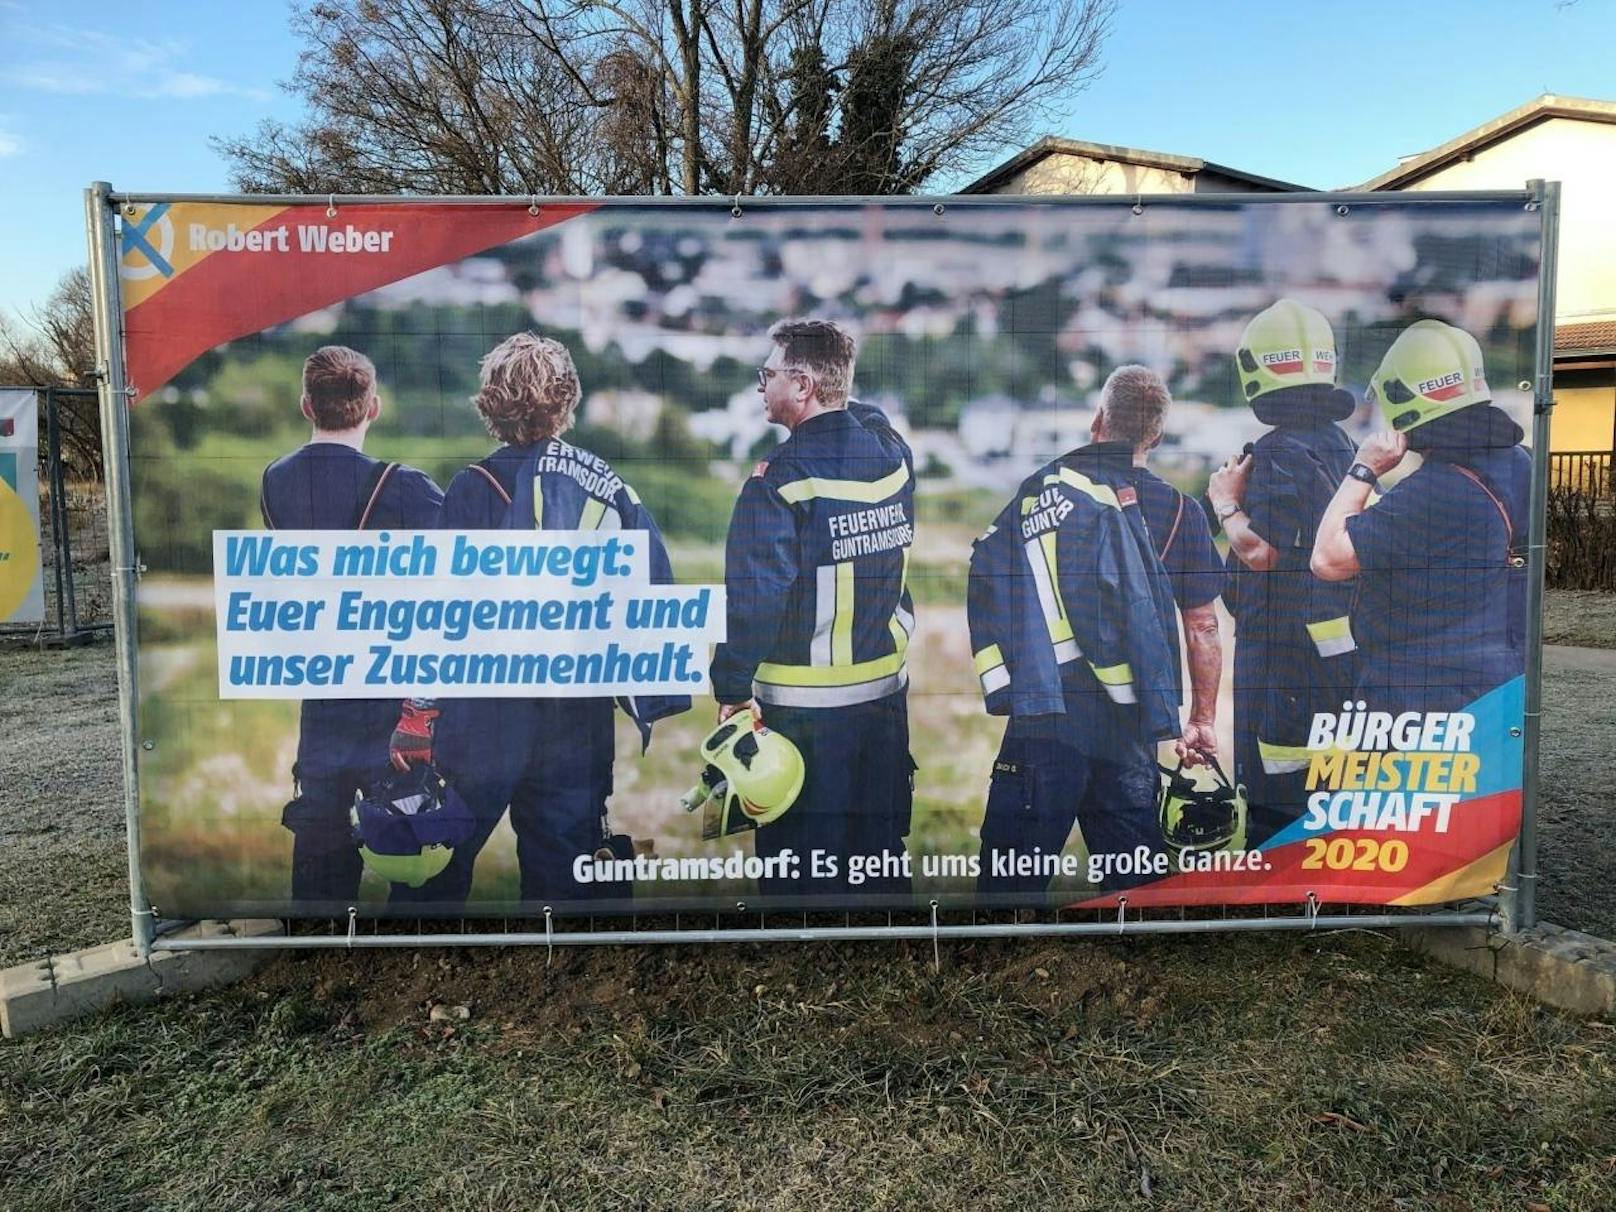 Eines der Wahlplakate von Robert Weber, die derzeit in Guntramsdorf für Aufregung sorgen.